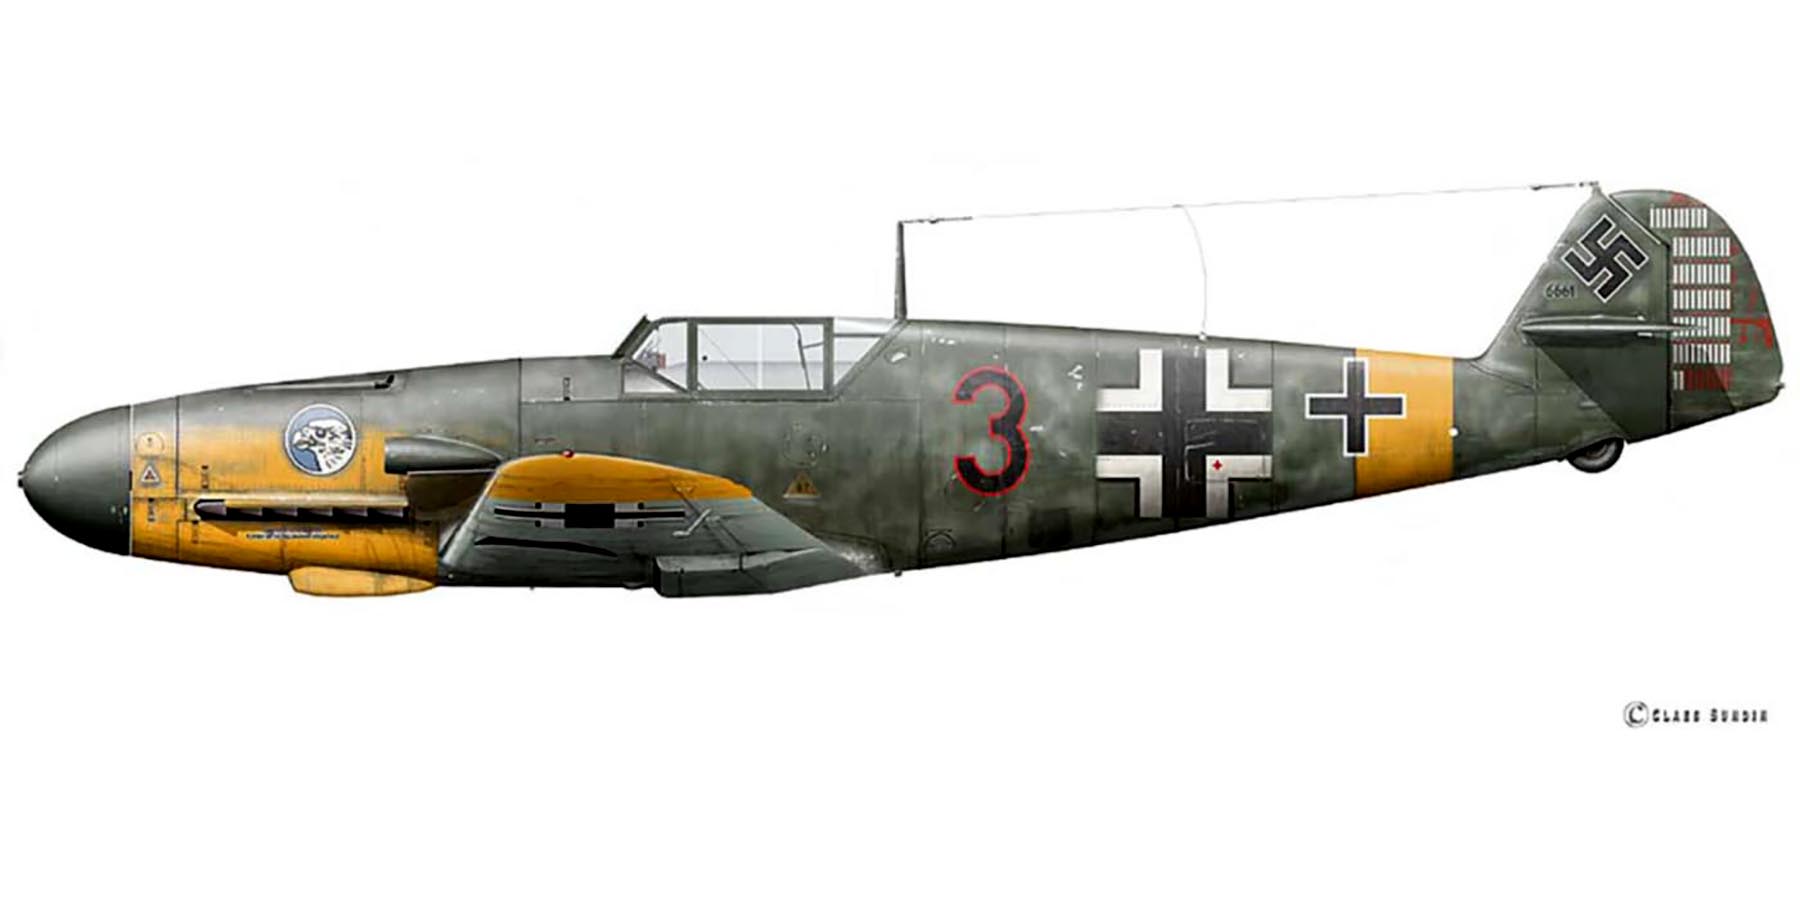 Messerschmitt Bf 109F2 11.JG51 Black 3 Heinz Klopper Dugino USSR Sep 1942 0A